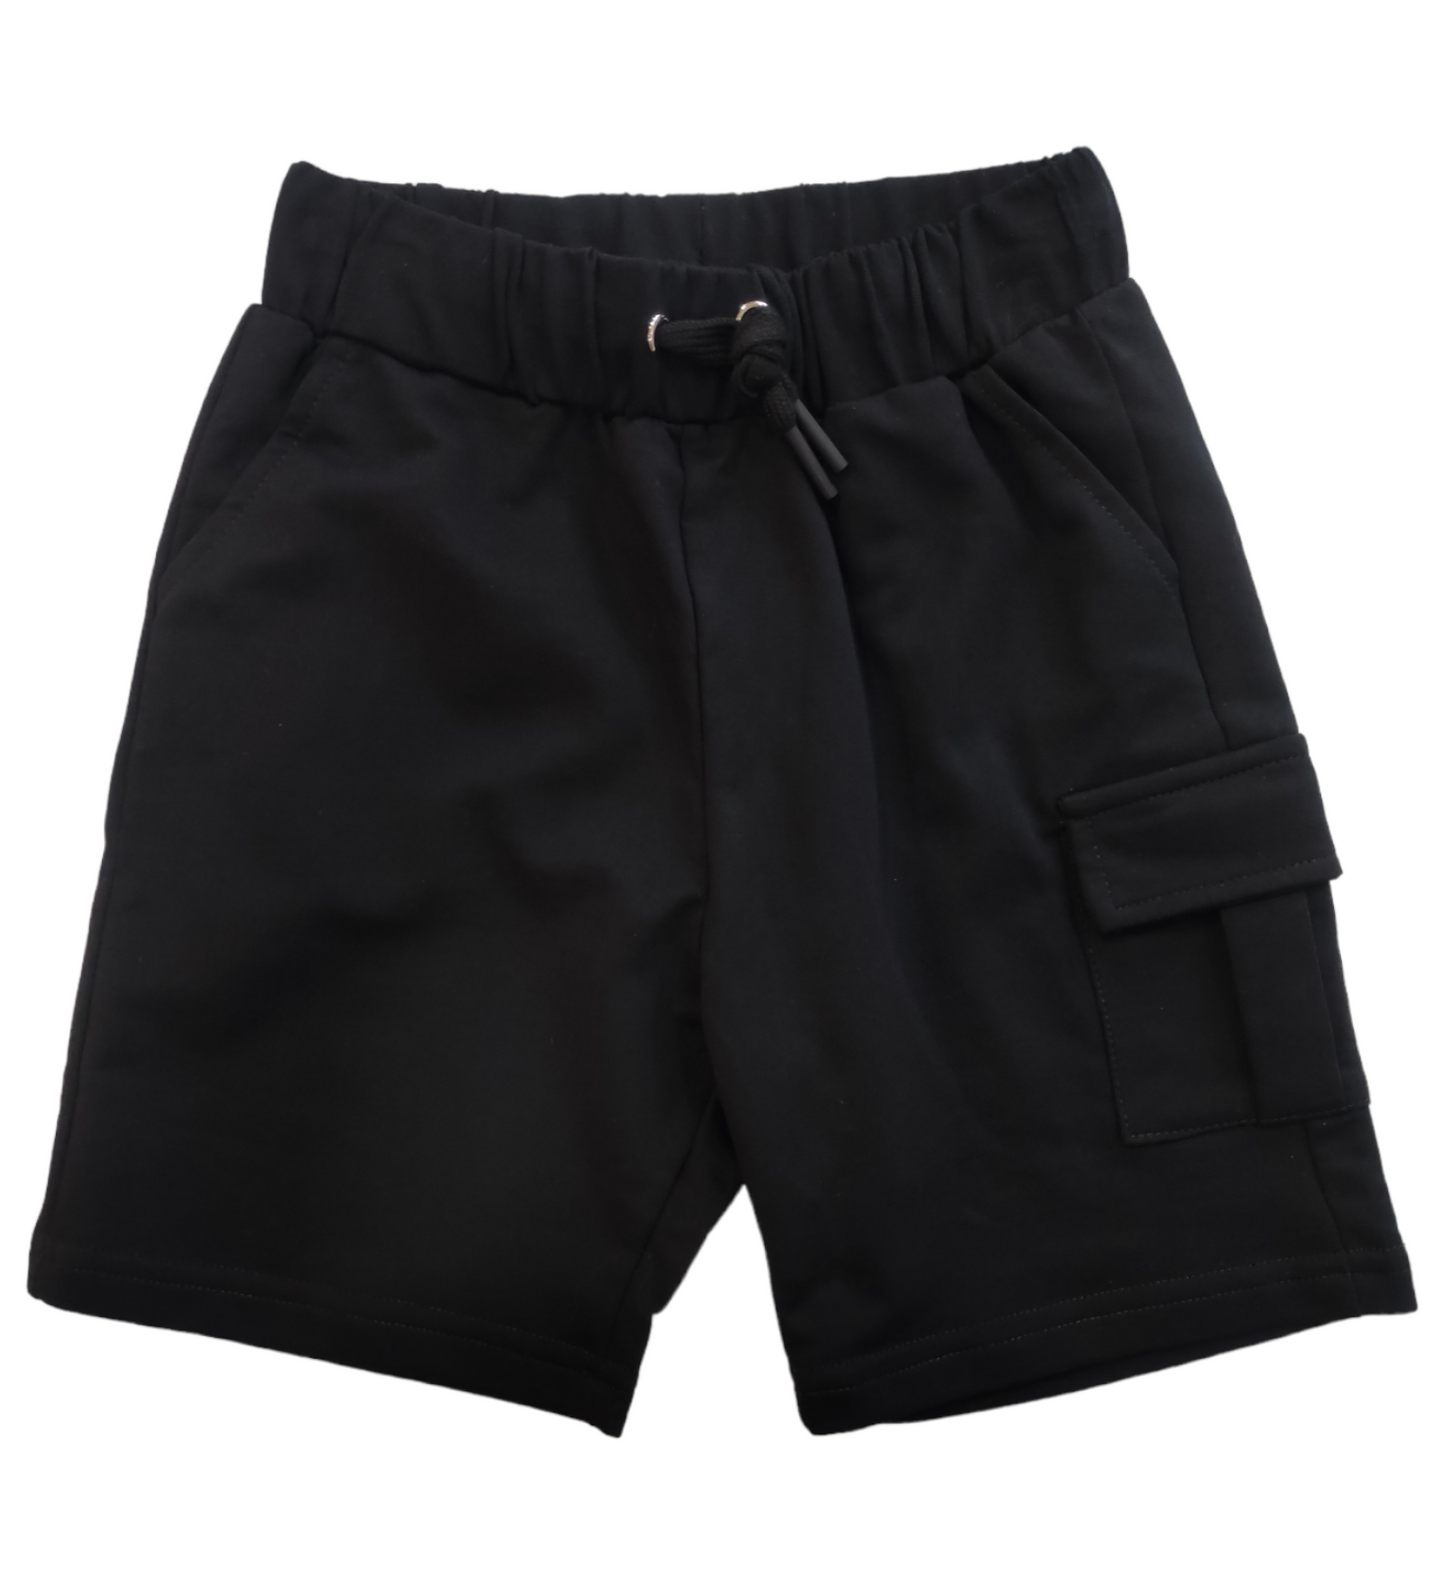 Pantaloncino Modello Bermuda Nero con Taschino Laterale Bambino/Ragazzo 4-14 Anni